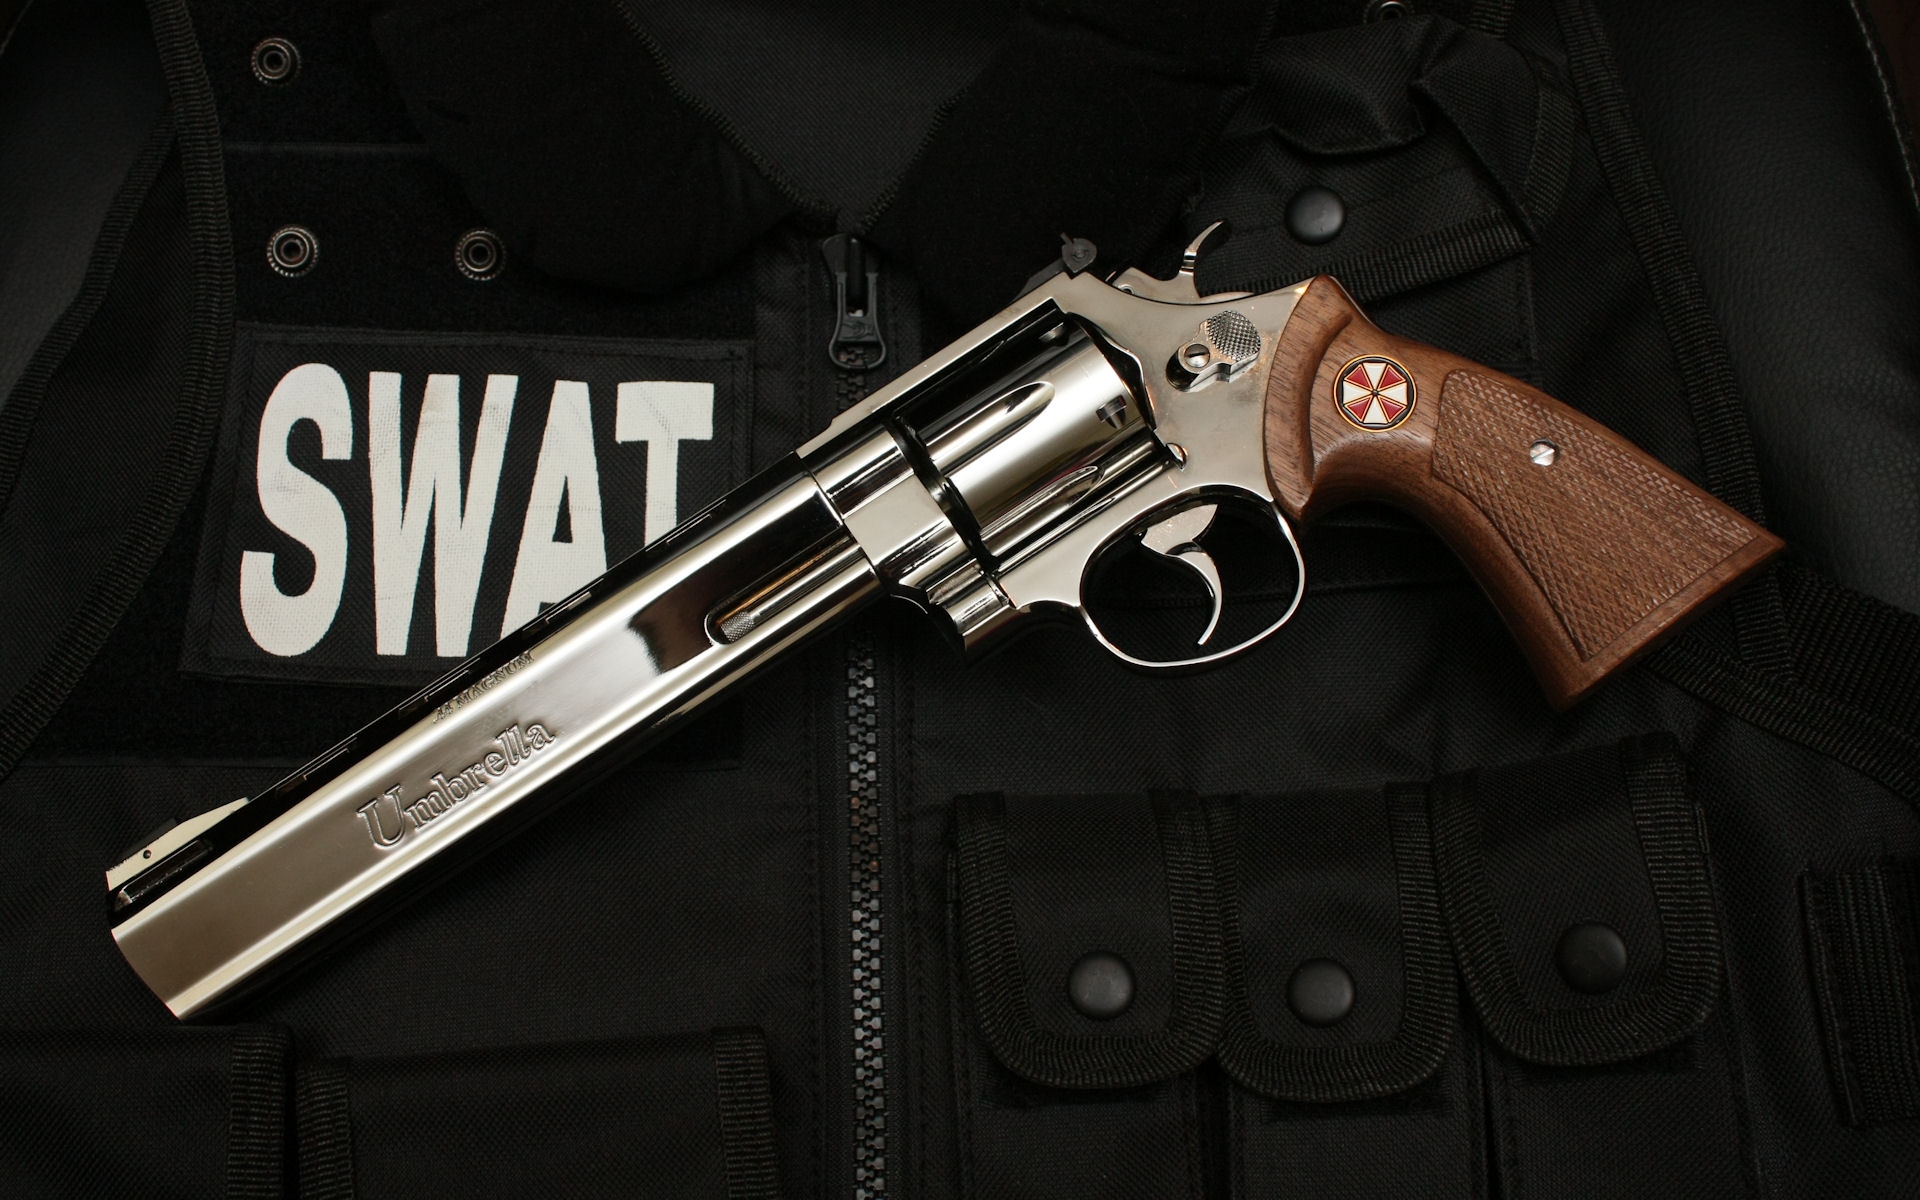 Картинки Swat, пистолет, пуленепробиваемый жилет, зонтик фото и обои на рабочий стол